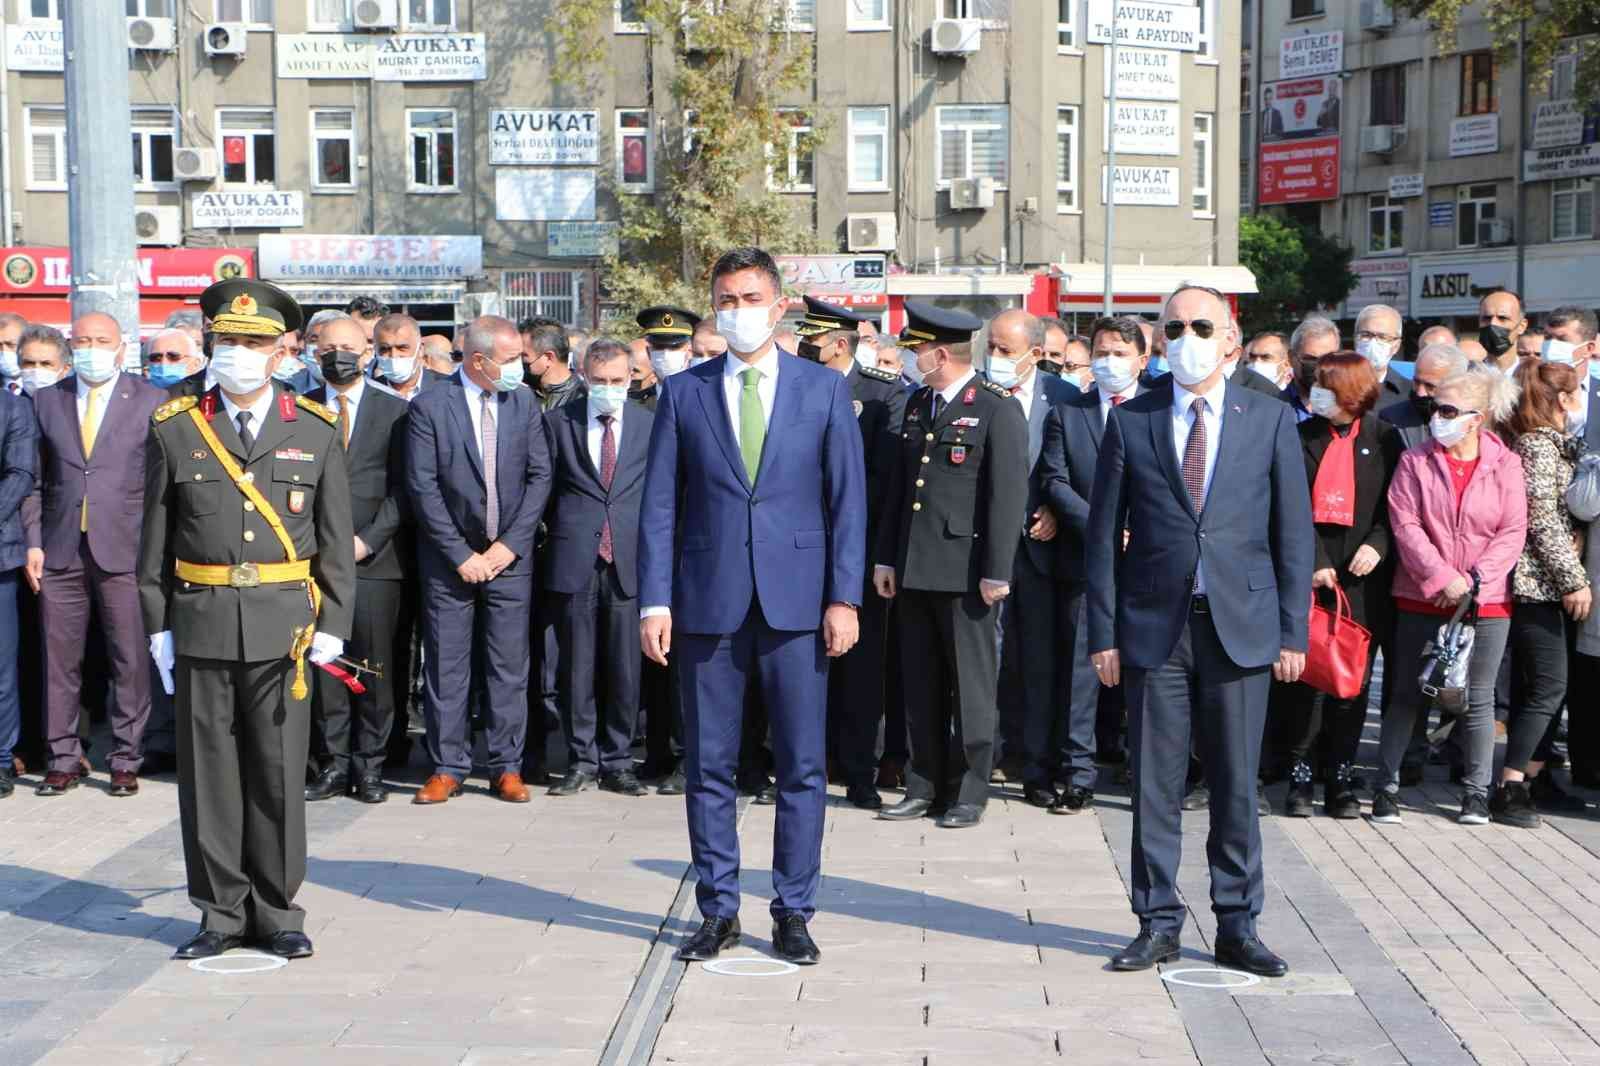 617a9d8f3f6d7-Kırıkkale’de, 29 Ekim Cumhuriyet Bayramı töreni yapıldı.jpg